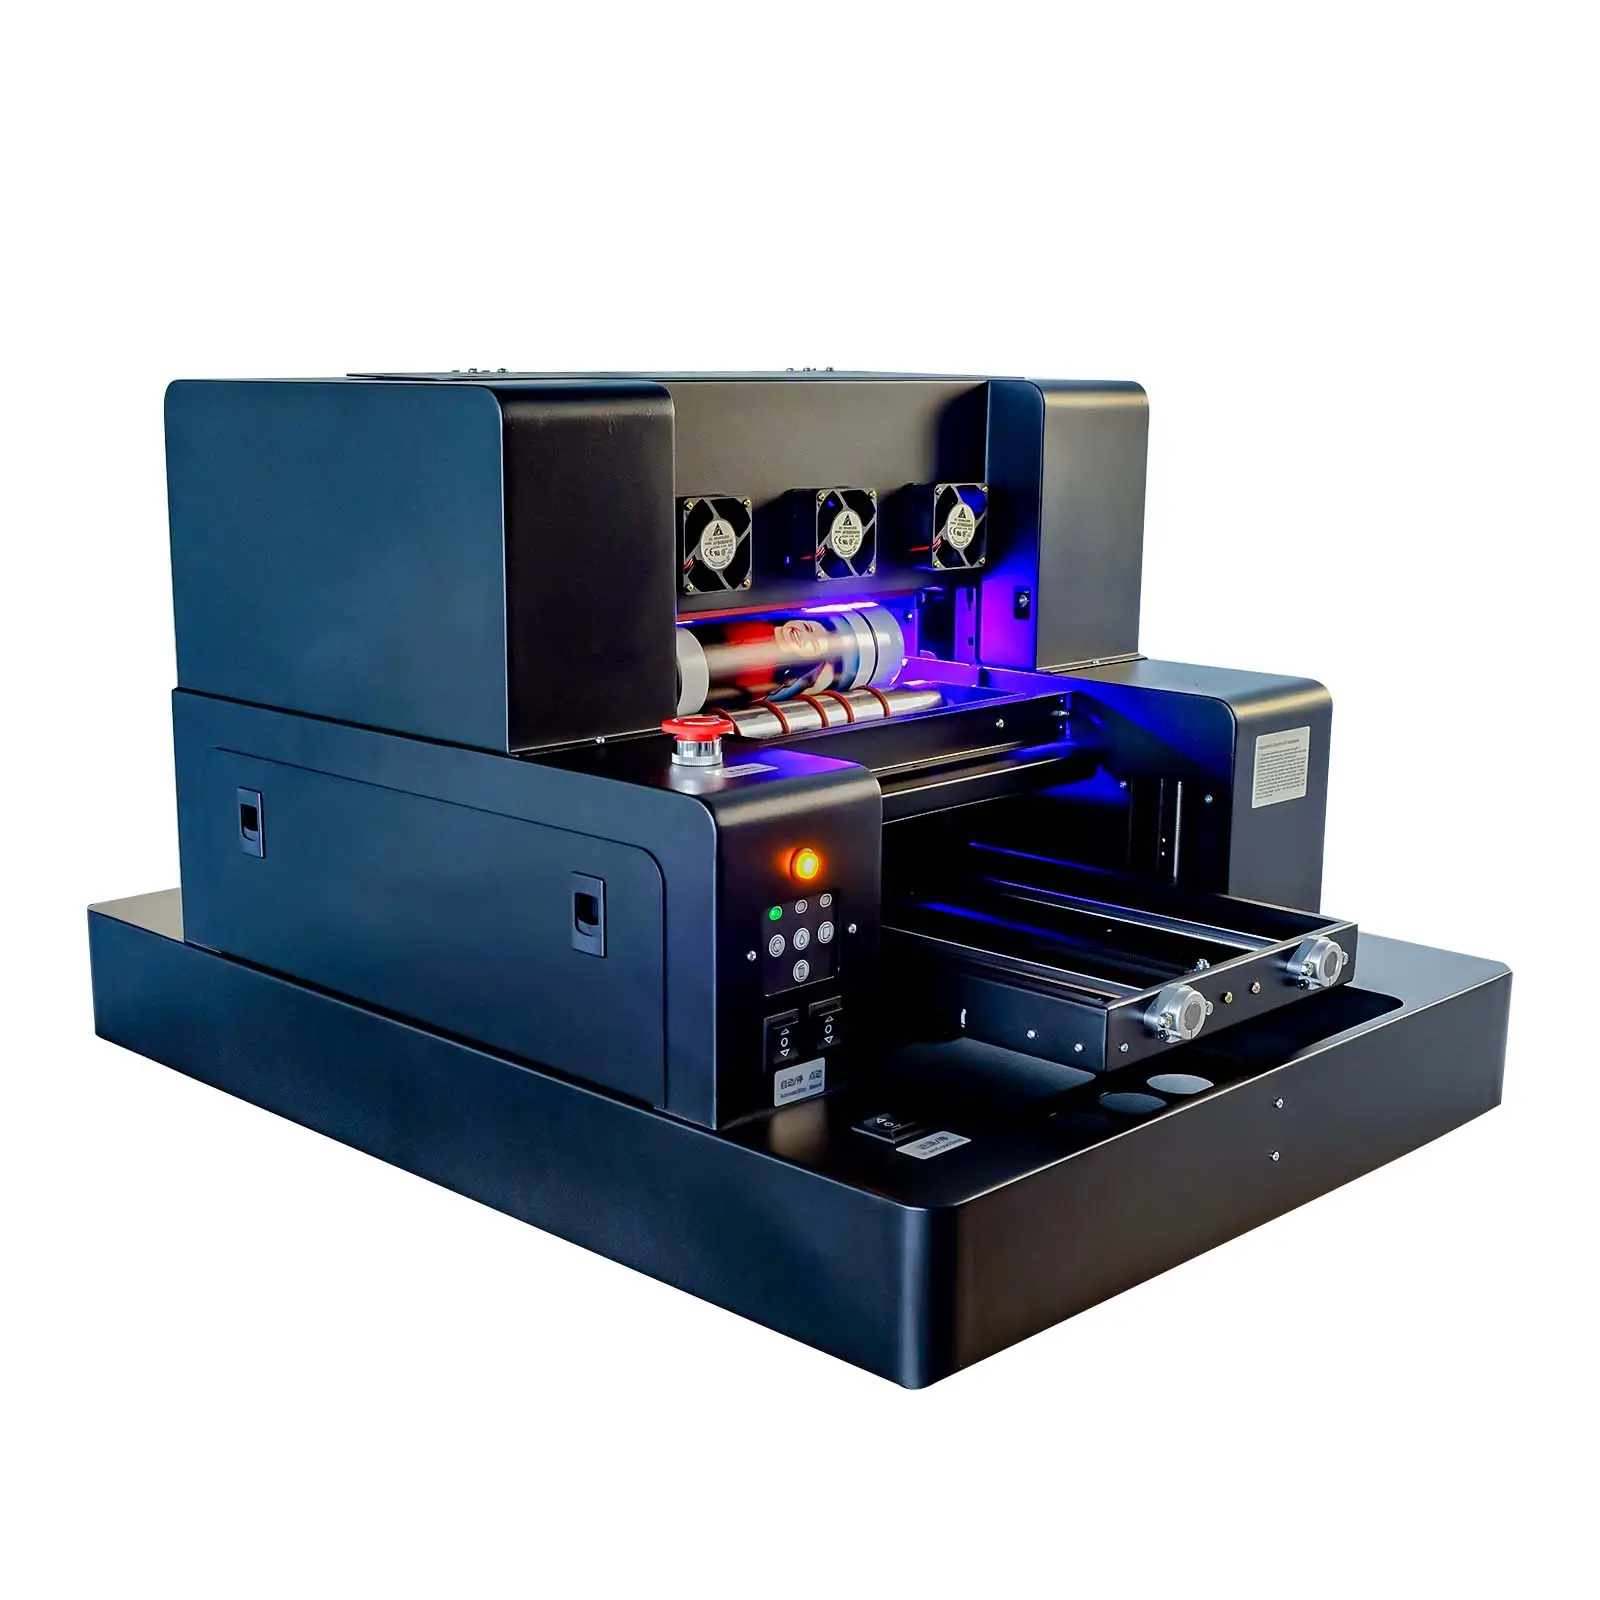 Funsun-Impresora de gran formato UV, máquina de impresión A3, para fabricar carcasas de teléfonos móviles de China, precio de agente de alta calidad, de alta calidad, en el mercado, en el extranjero